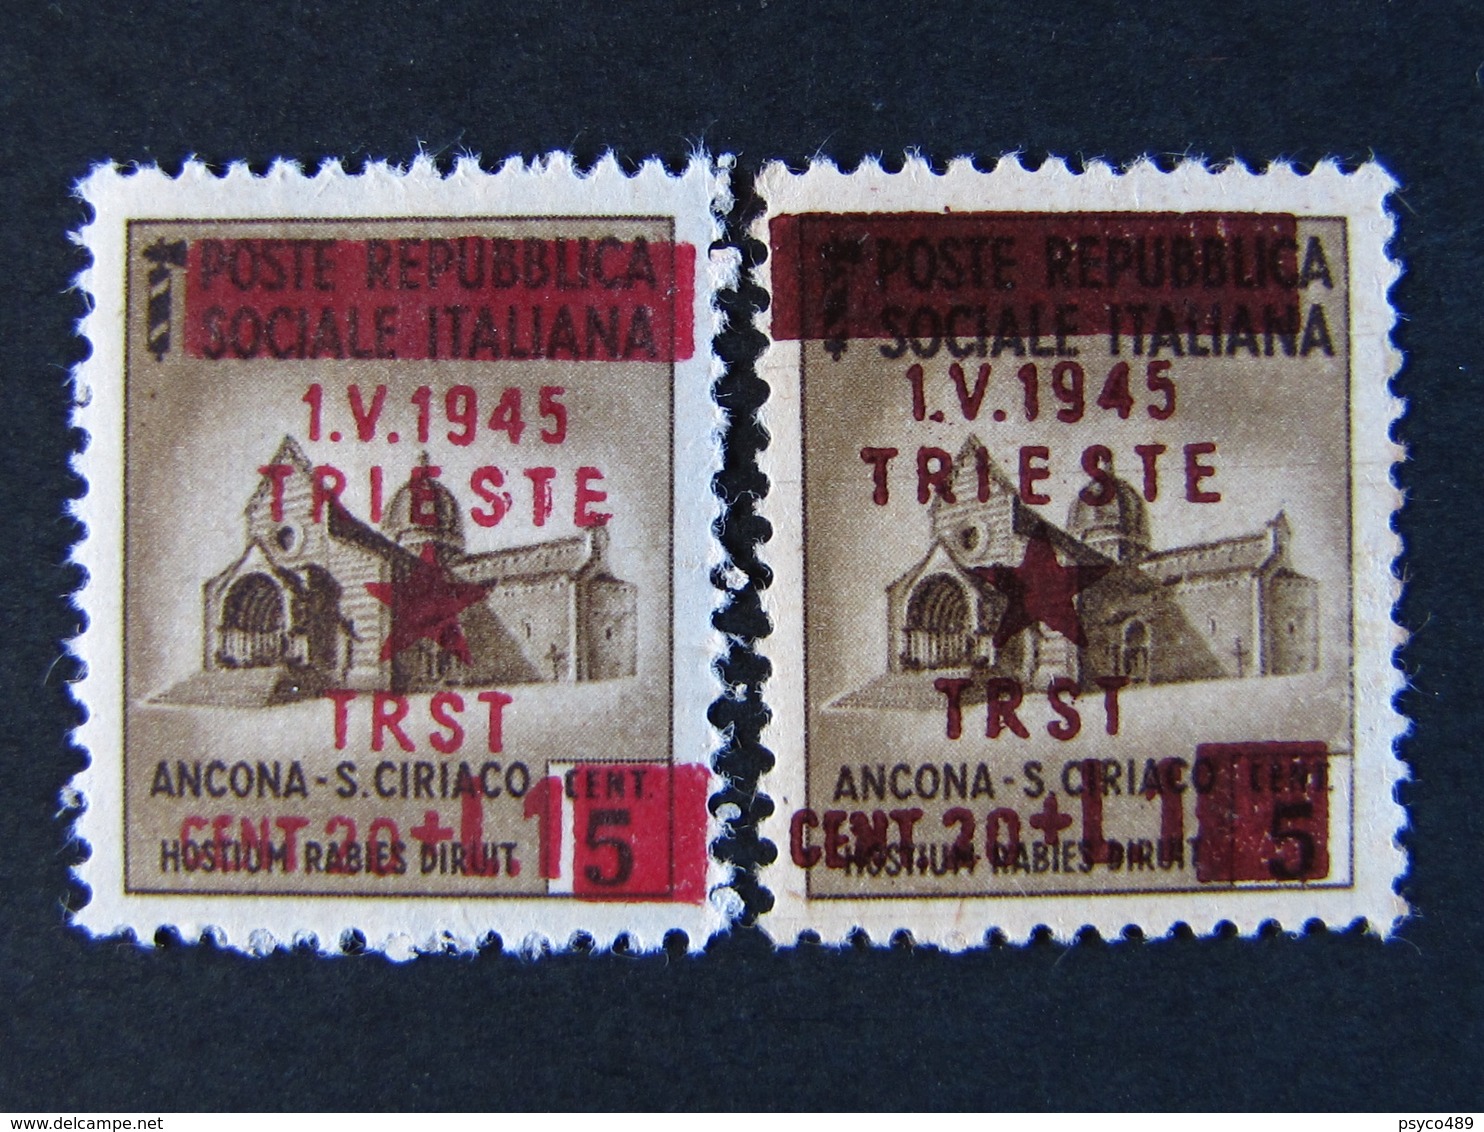 ITALIA Occupazioni Jugoslavia Trieste-1945- "Monumenti Distrutti" £ 1 Su 5 Varietà MH* (Descrizione) - Yugoslavian Occ.: Trieste